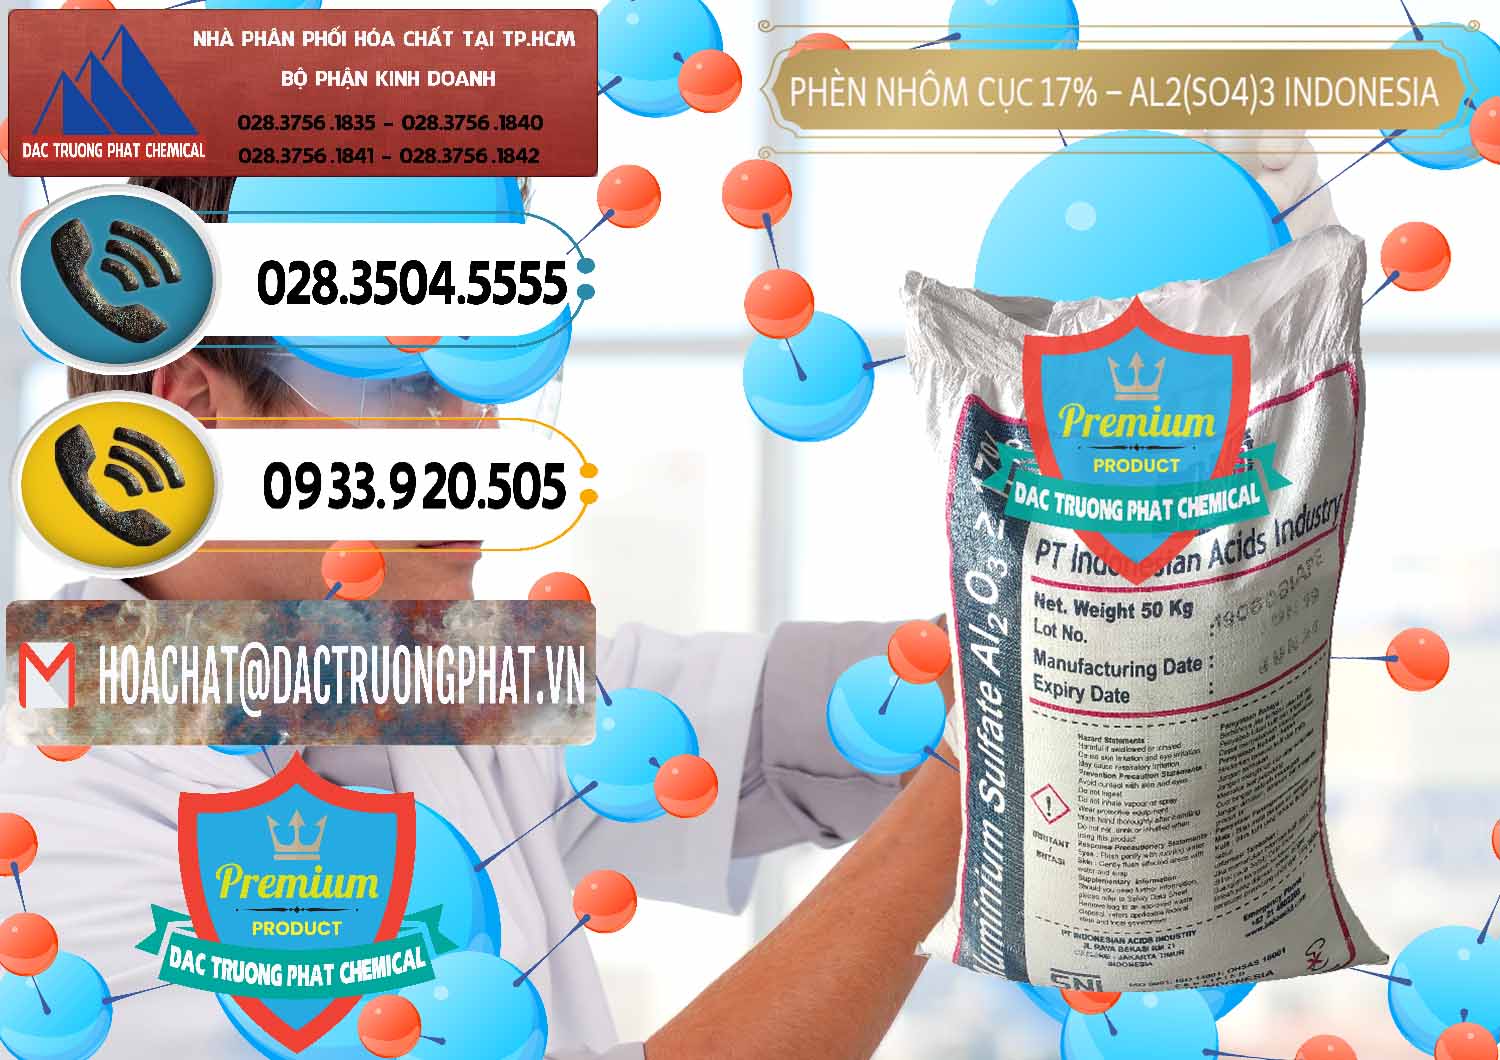 Công ty chuyên bán _ phân phối Phèn Nhôm Cục - Al2(SO4)3 17% bao 50kg Indonesia - 0113 - Chuyên cung cấp & bán hóa chất tại TP.HCM - hoachatdetnhuom.vn